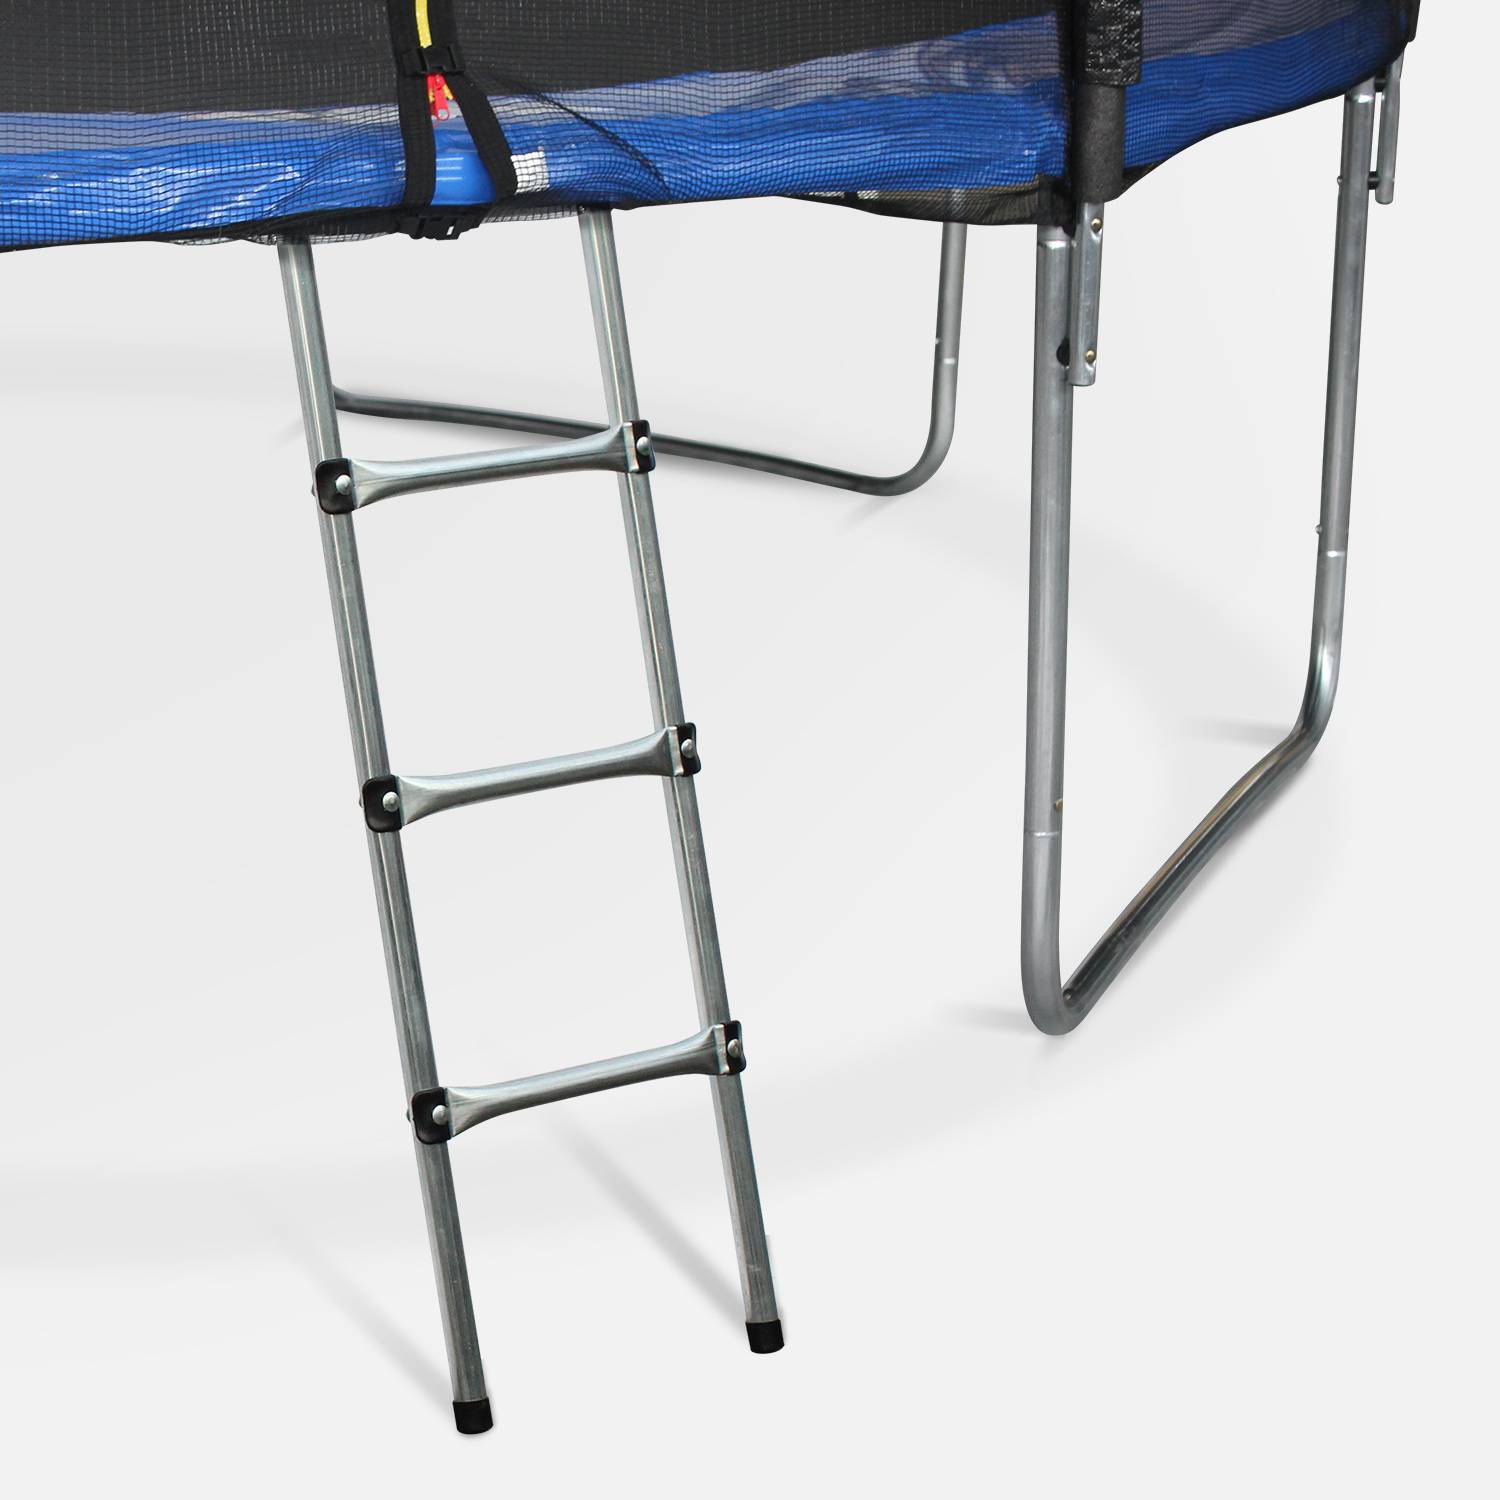 Pakket met accessoires voor trampoline Ø490cm Jupiter met een ladder, een beschermhoes, een opbergnet voor schoenen en een verankeringskit Photo2